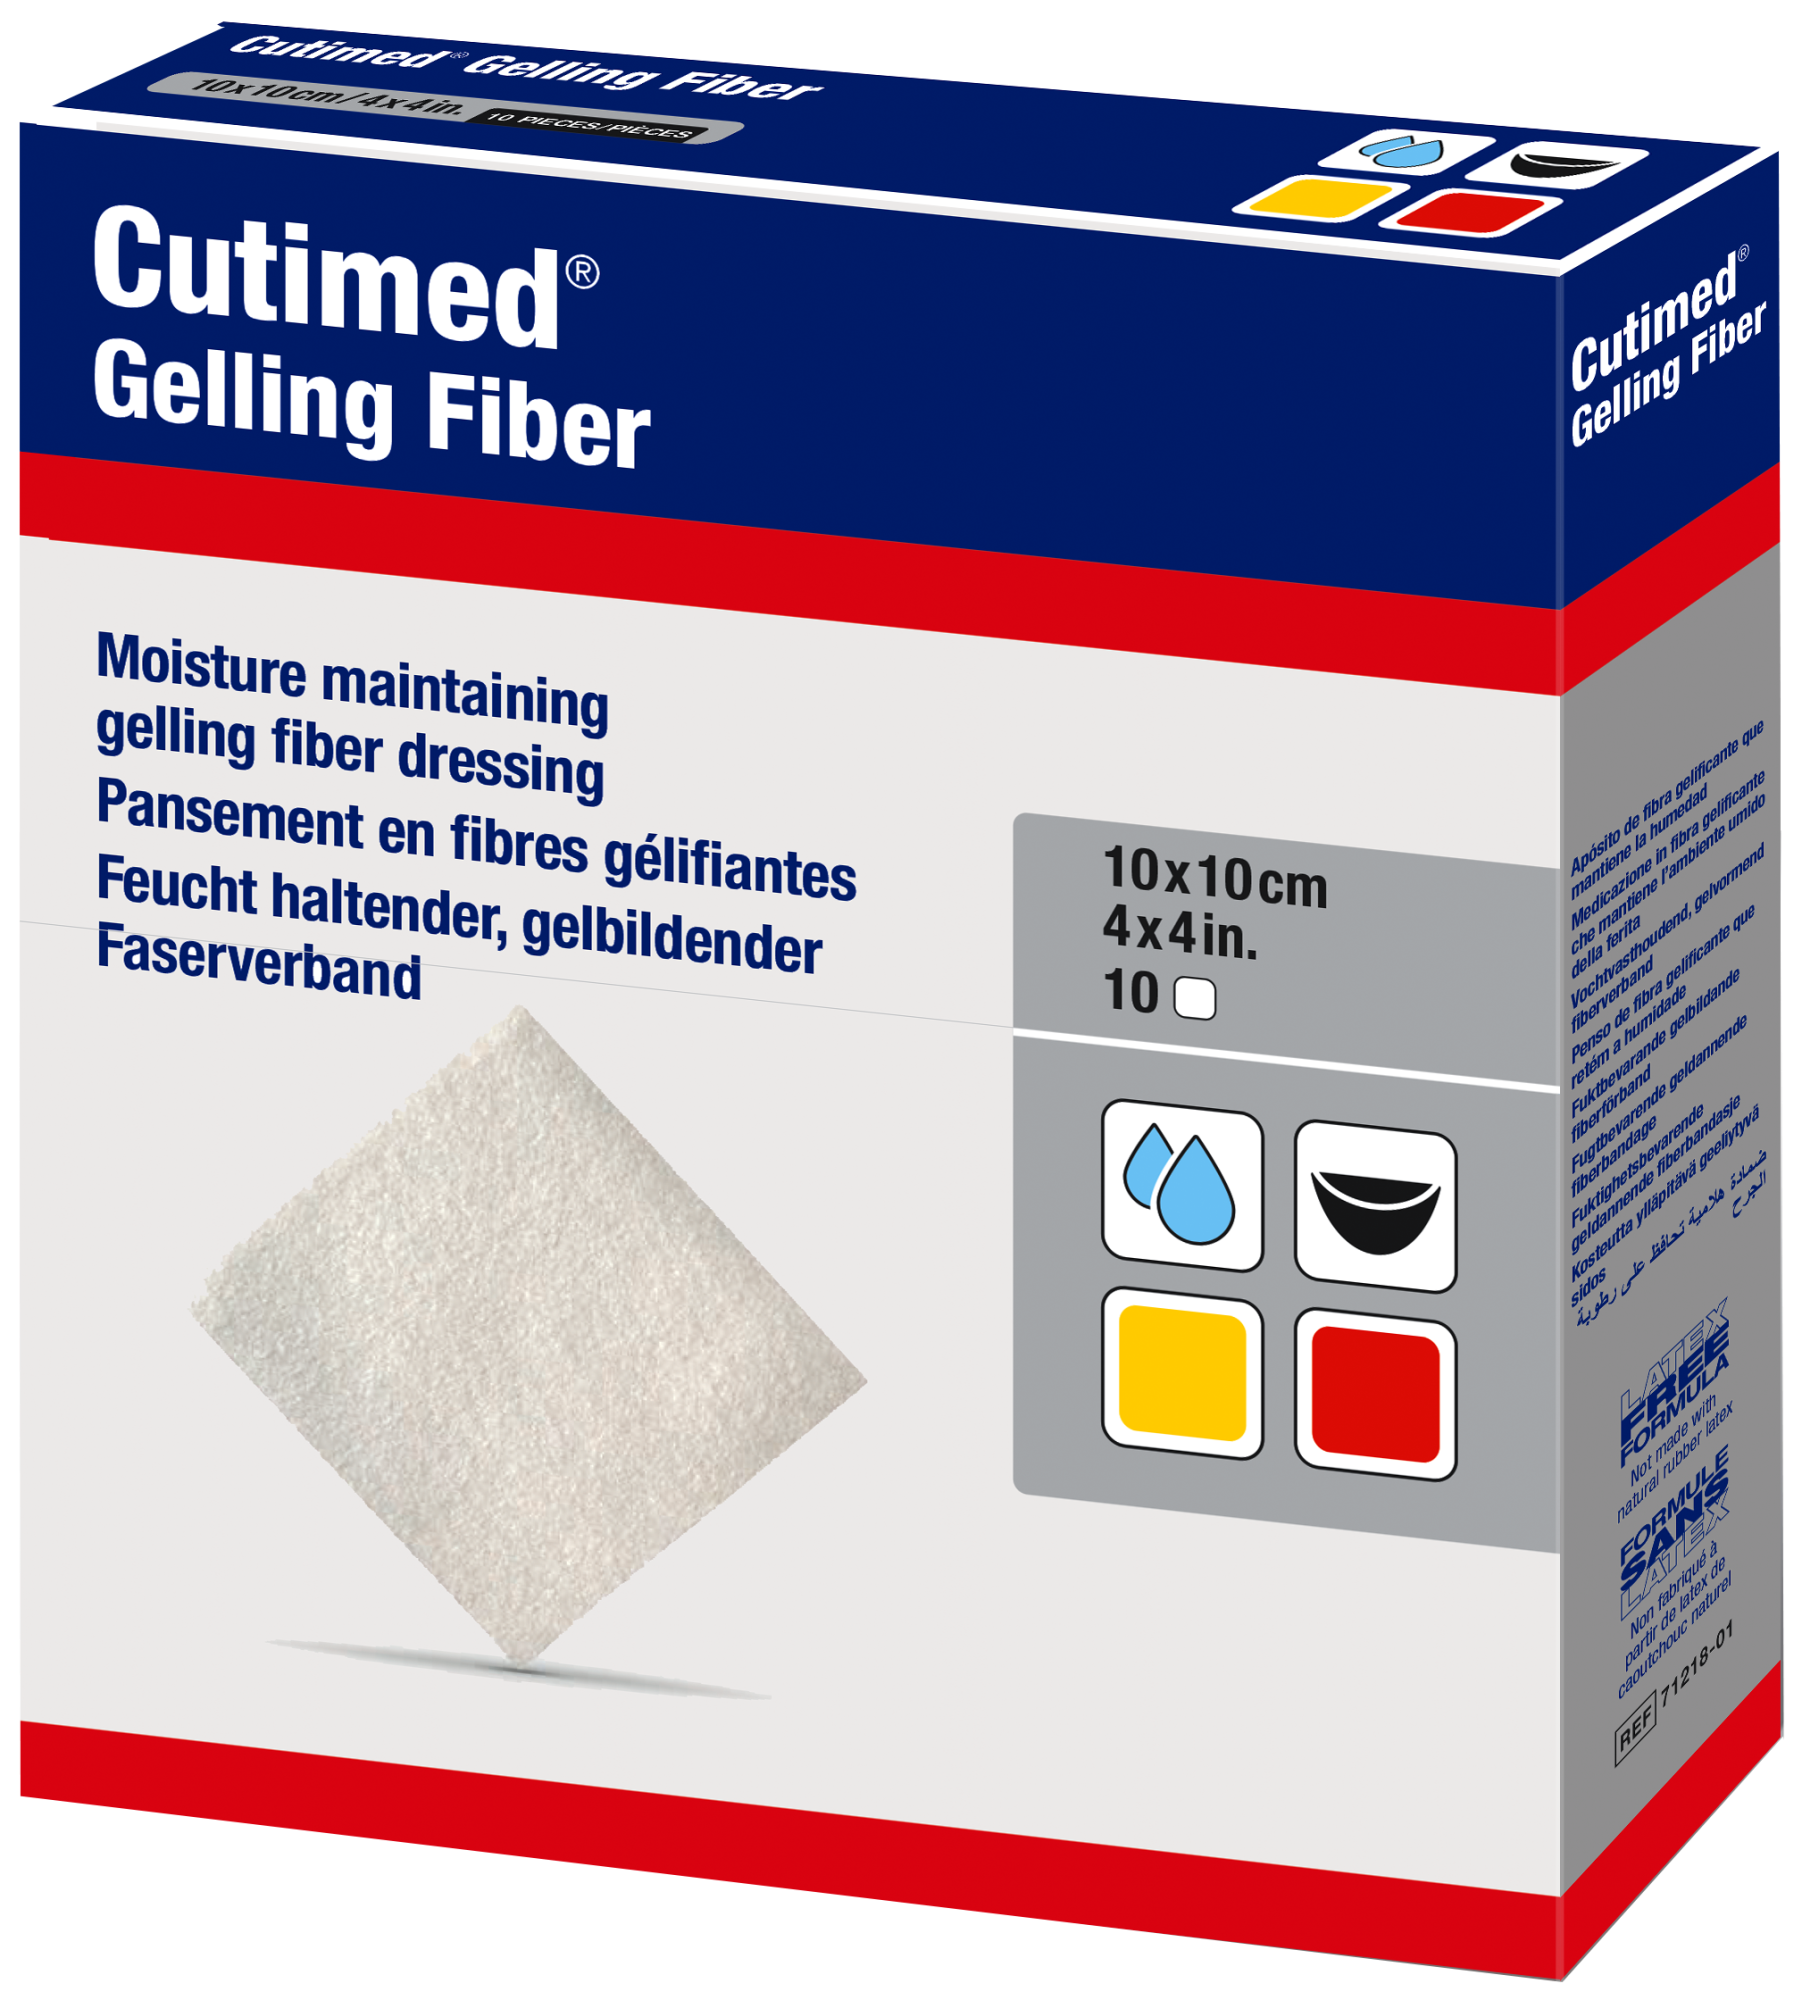 Bilde som viser et pakningsbilde av Cutimed Gelling Fiber